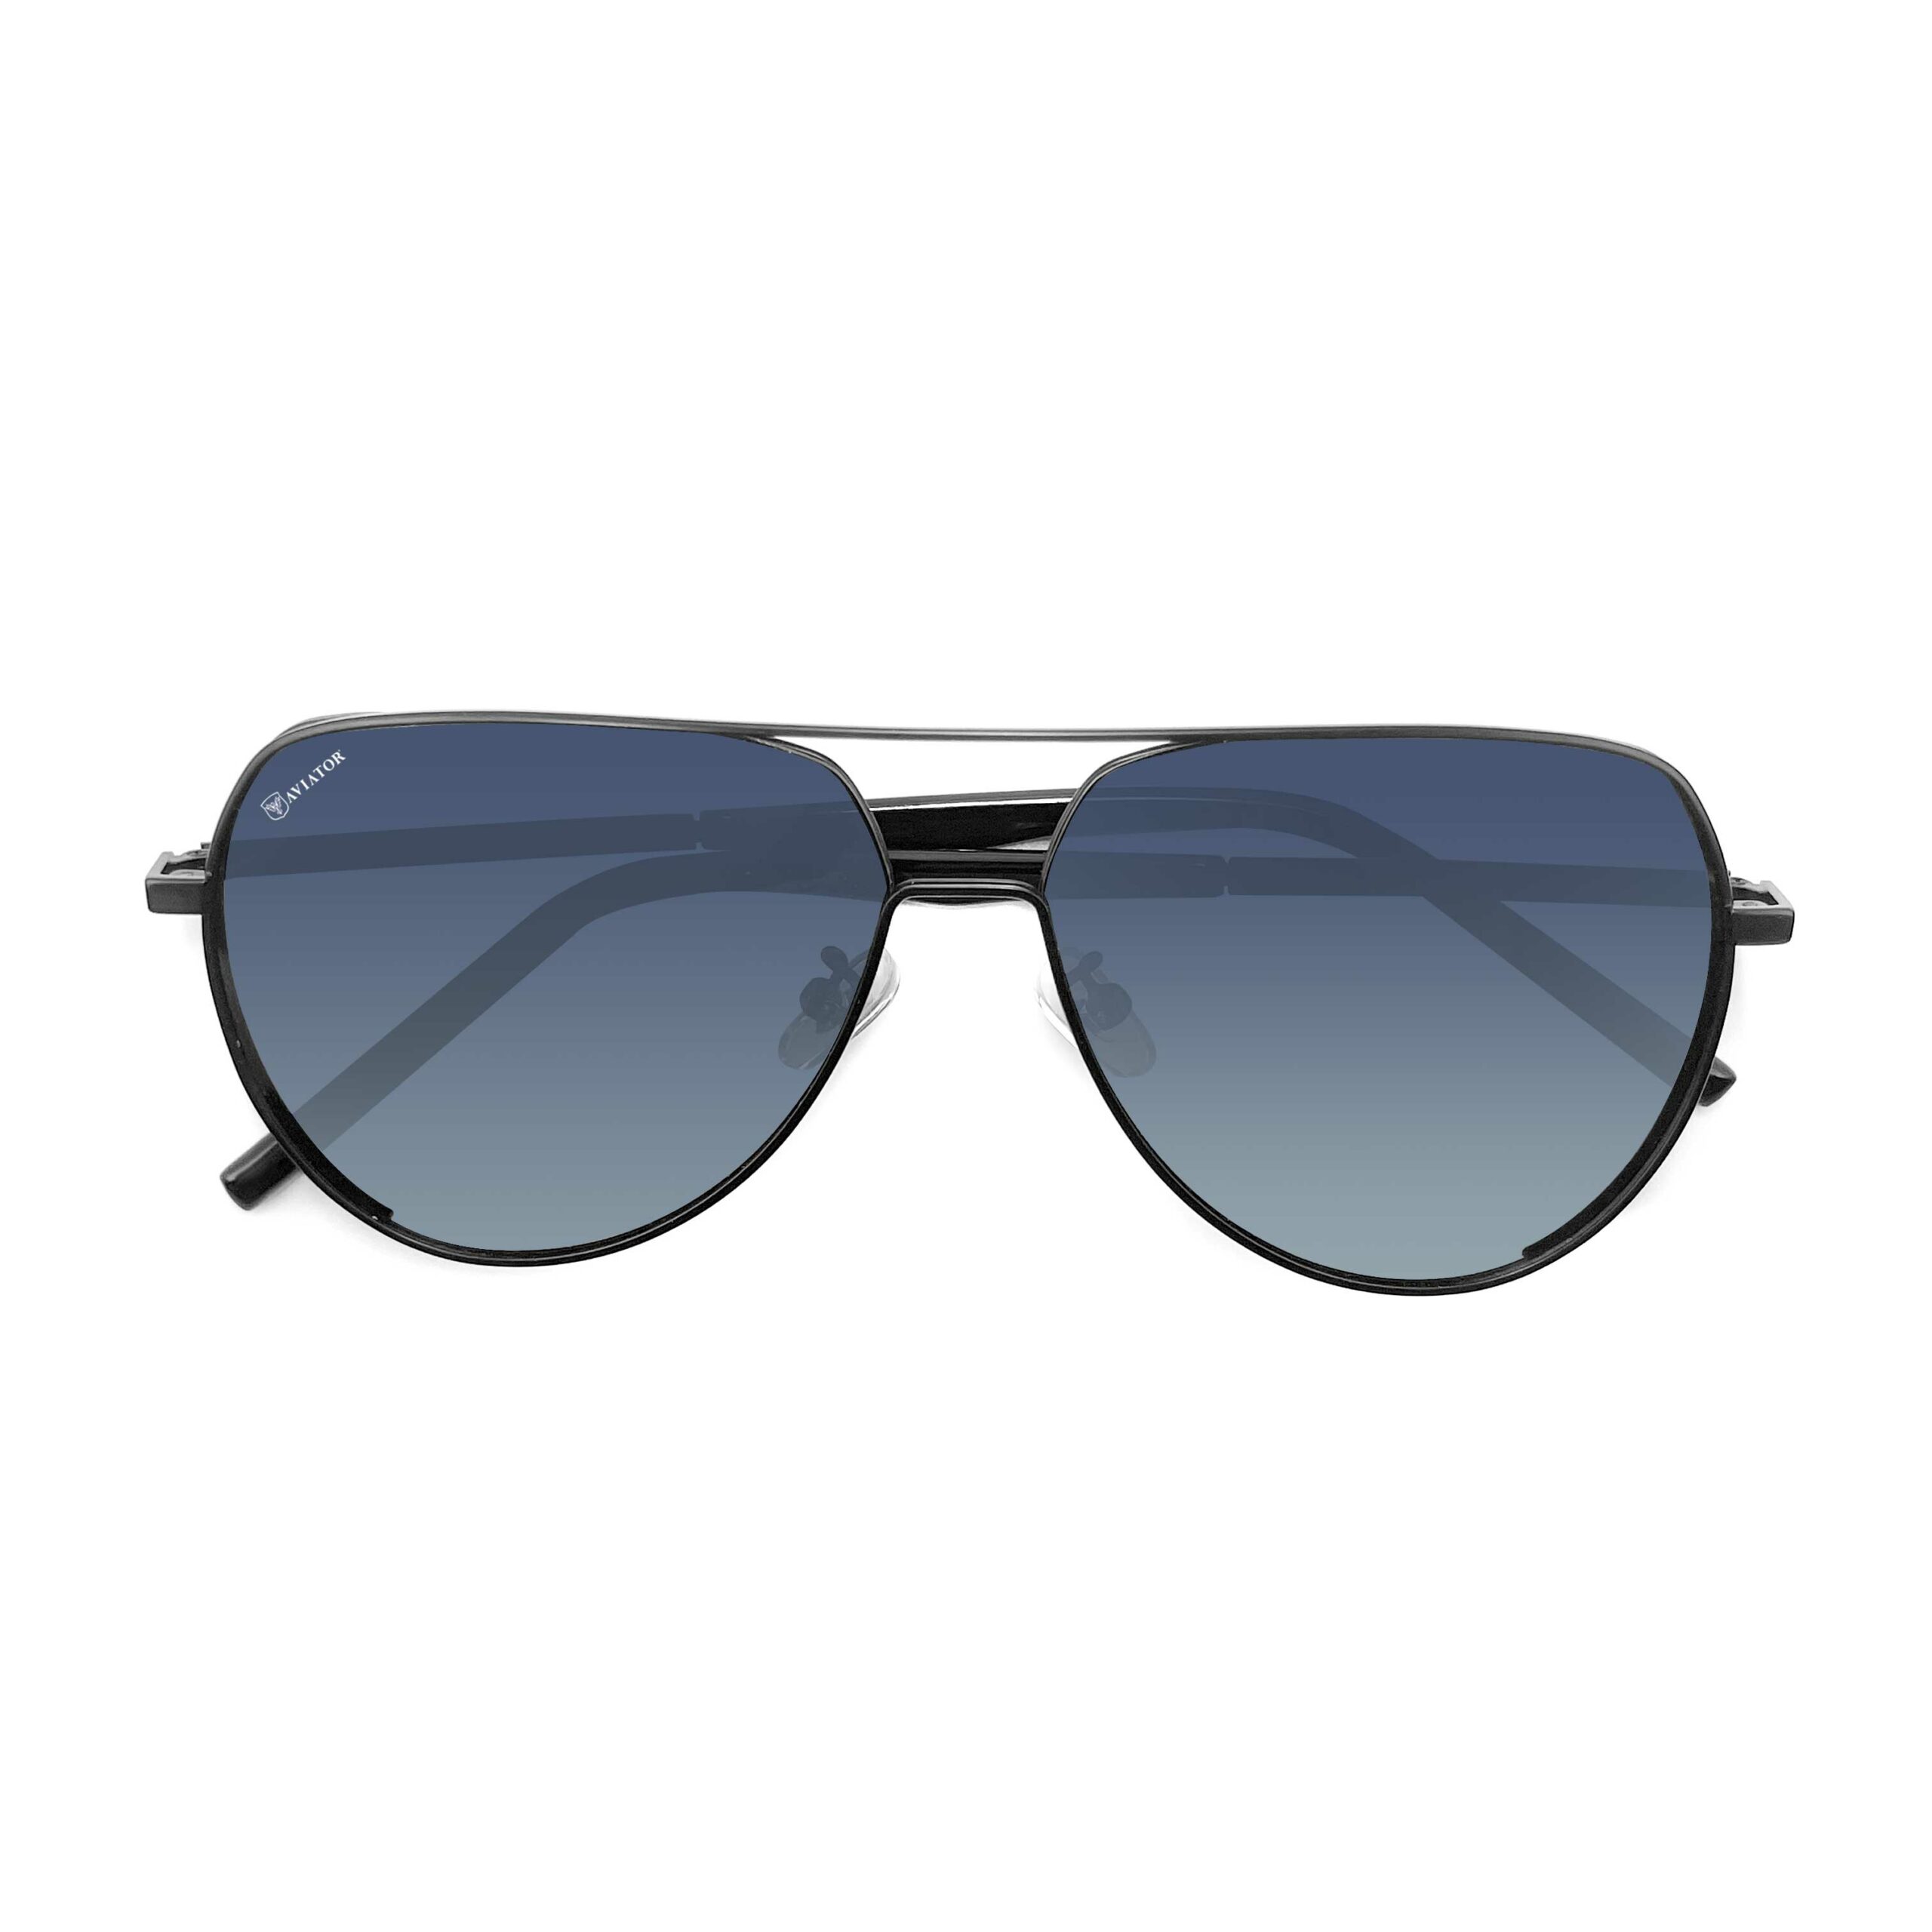 Aviator K399-C1 Sunglasses